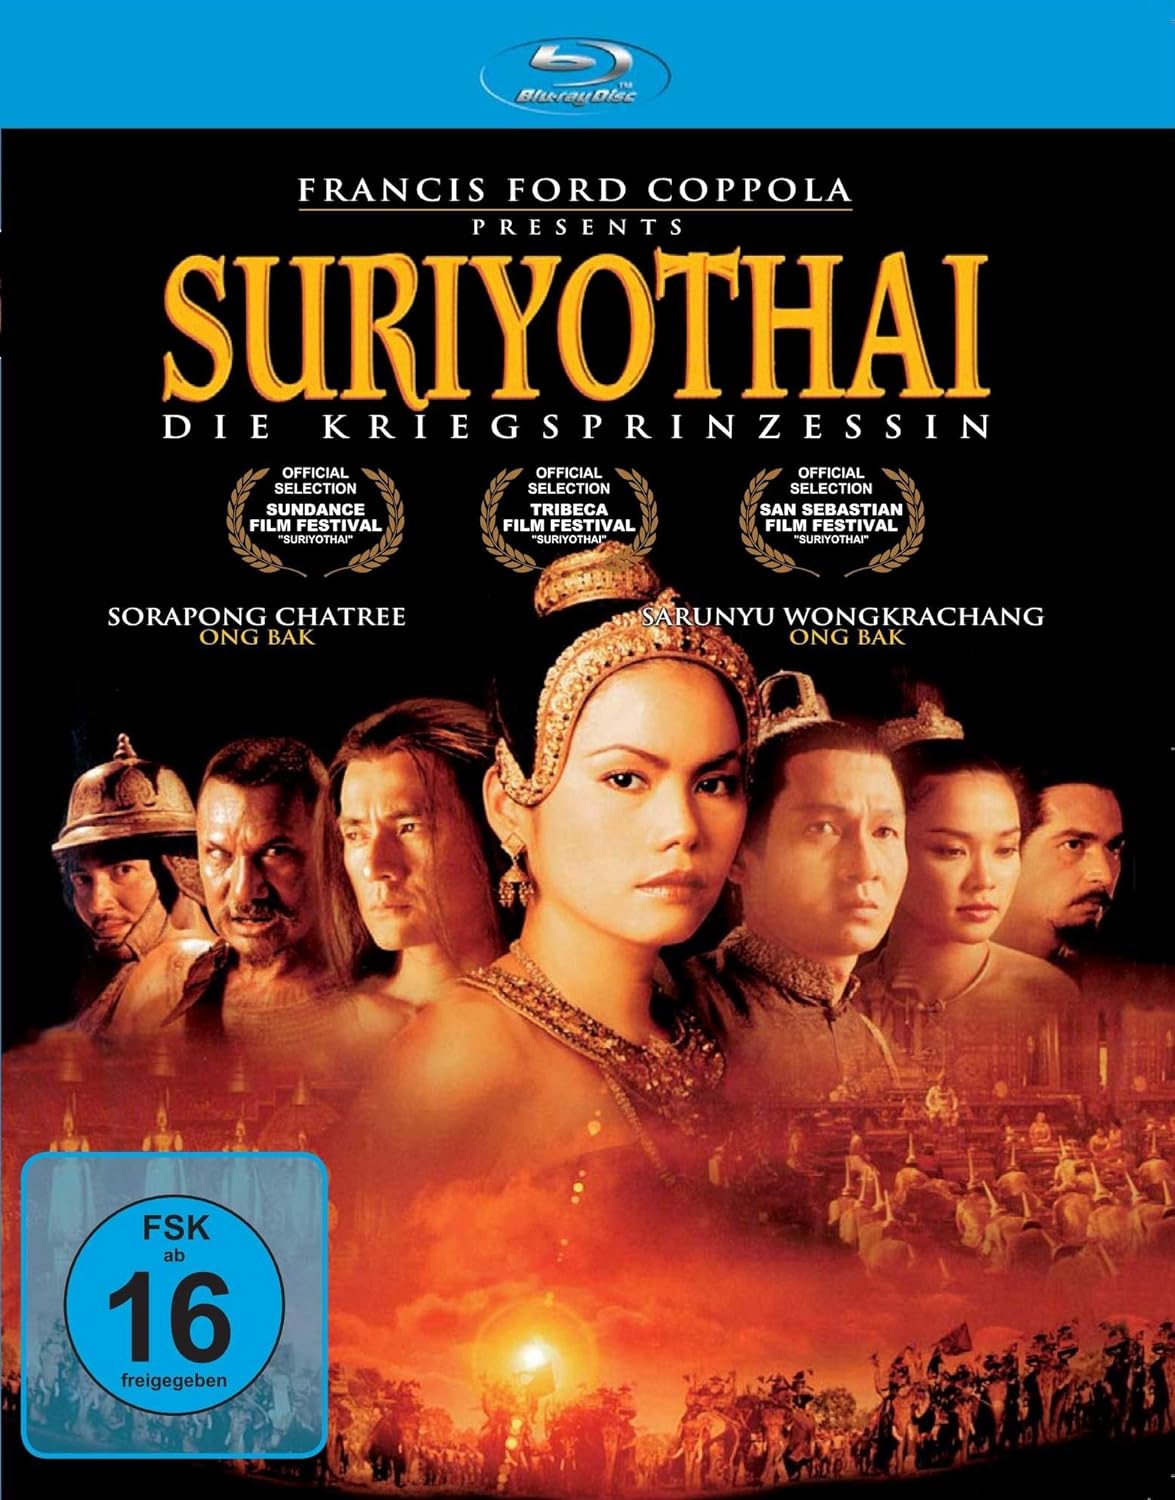 Suriyothai – Die Kriegsprinzessin [Blu-ray]